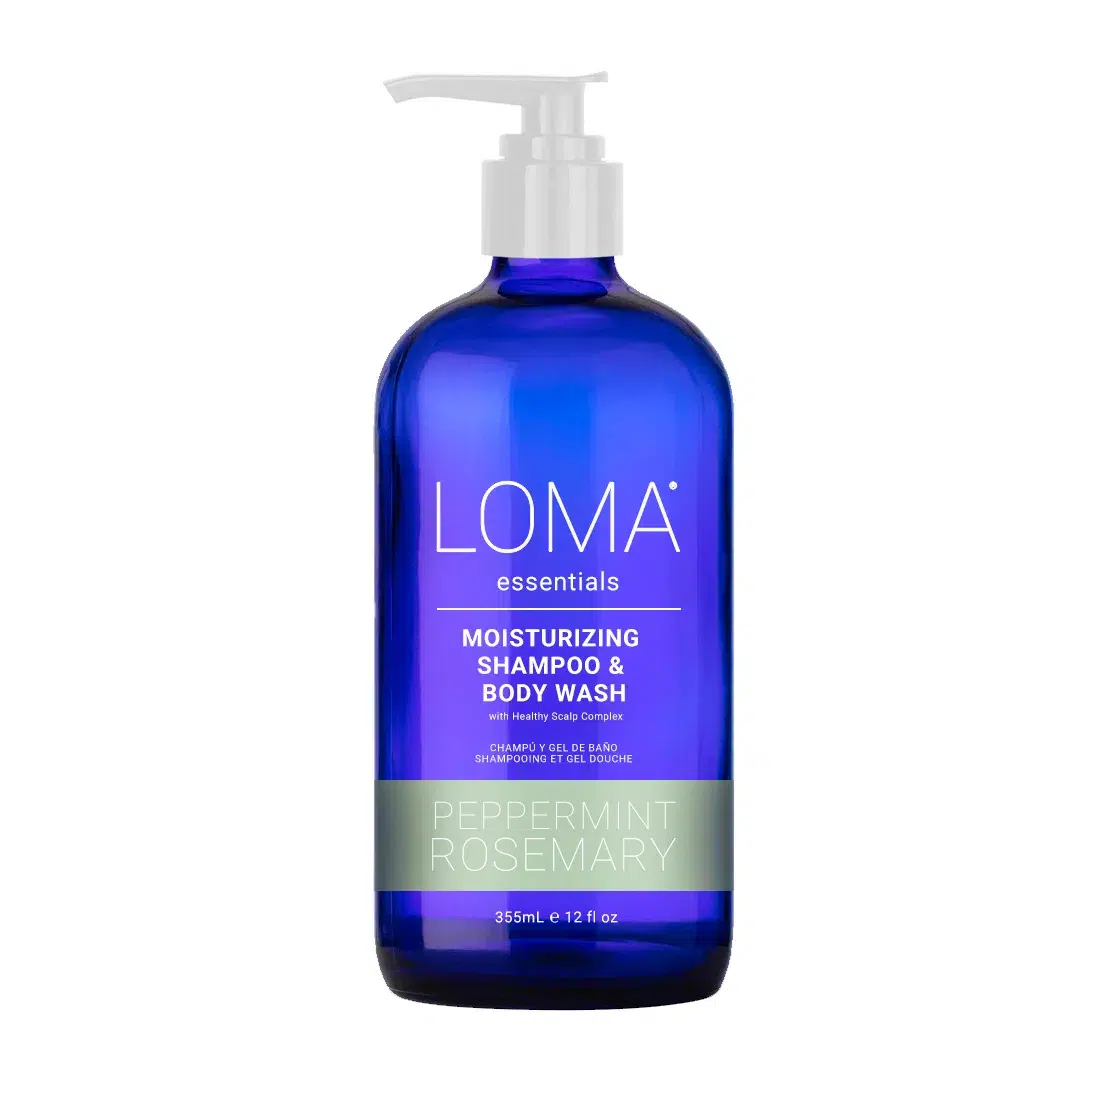 Essentials Moisturizing Shampoo & Body Wash